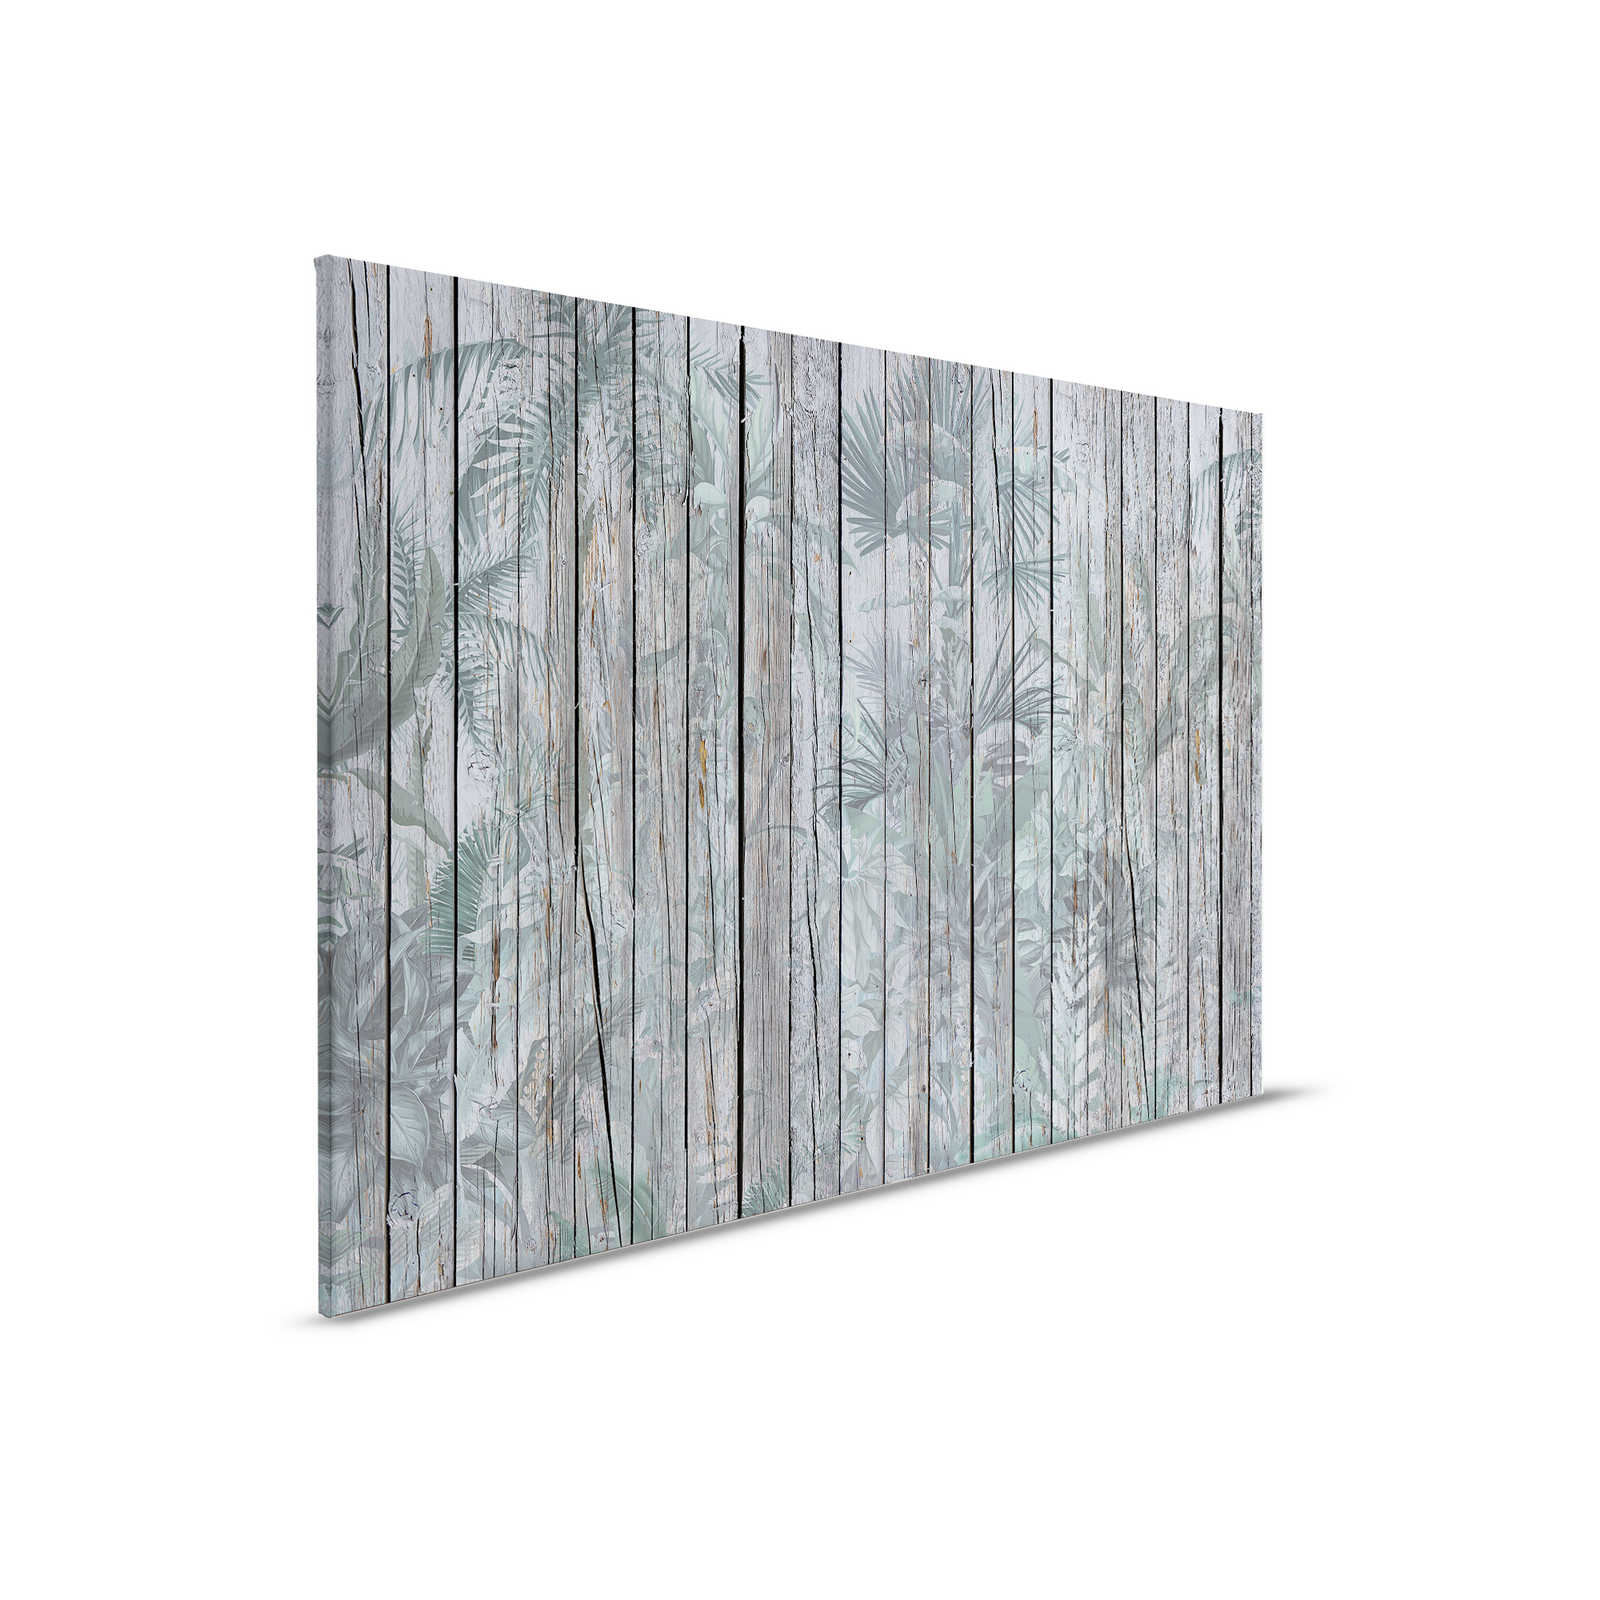 Pintura en lienzo Pared de madera con plantas selváticas - 0,90 m x 0,60 m
